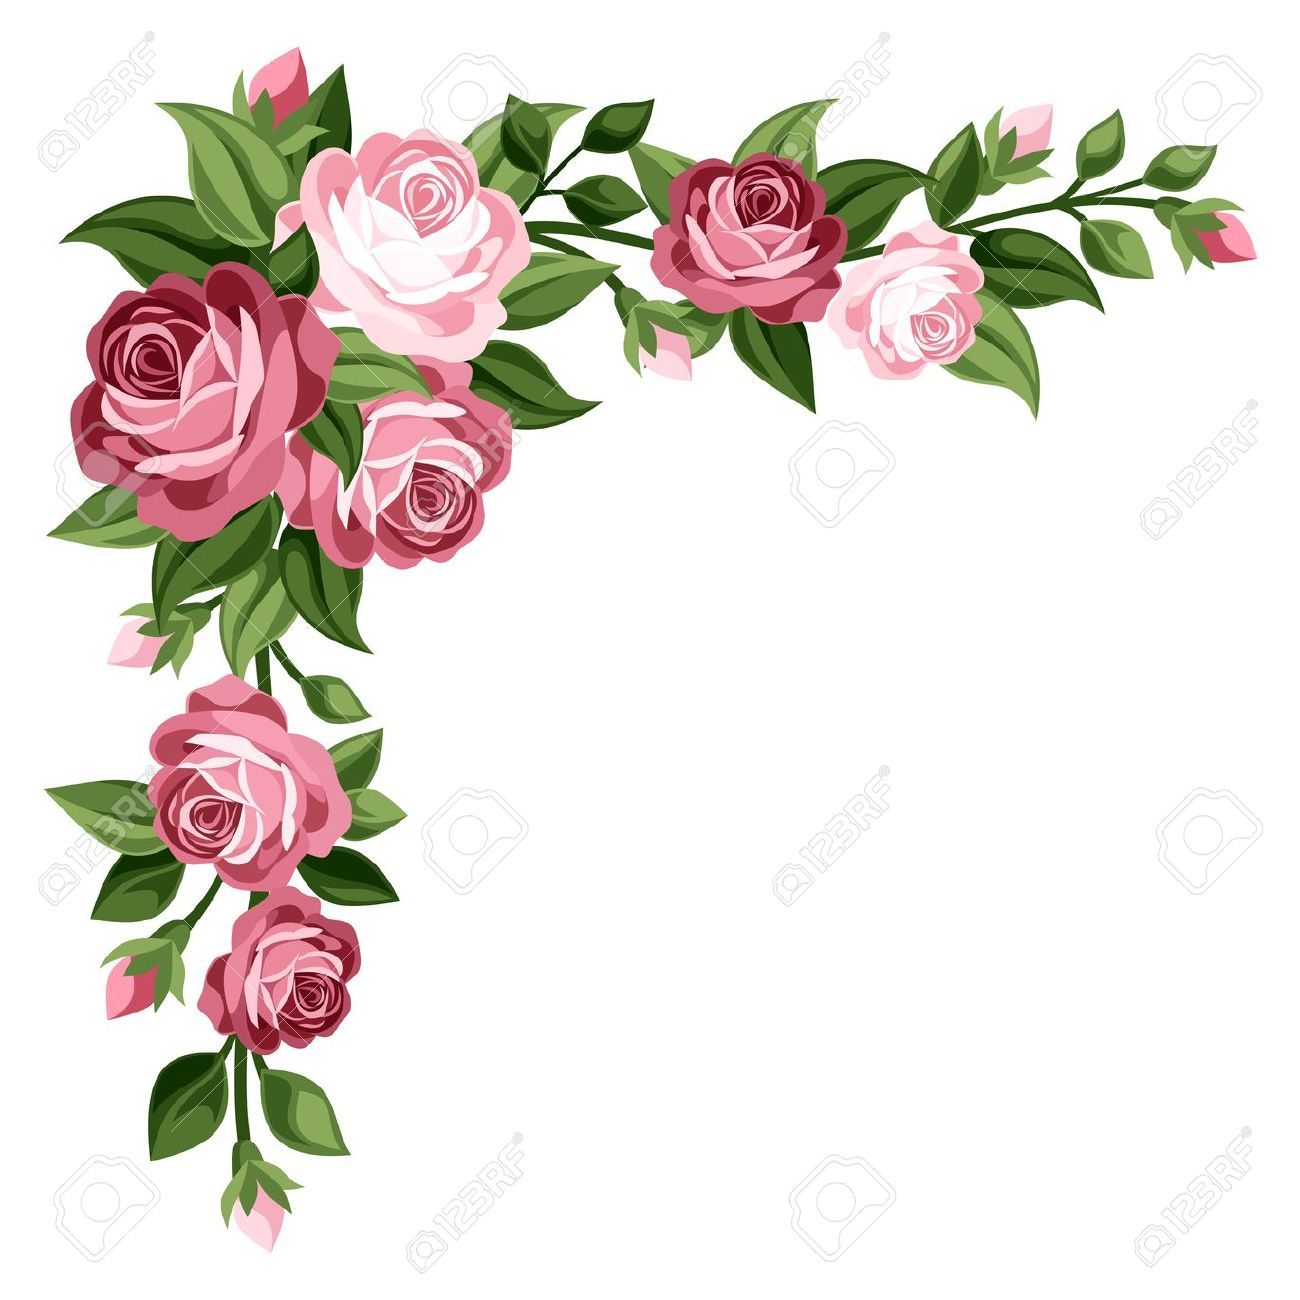 Rose Flower Border Clipart.